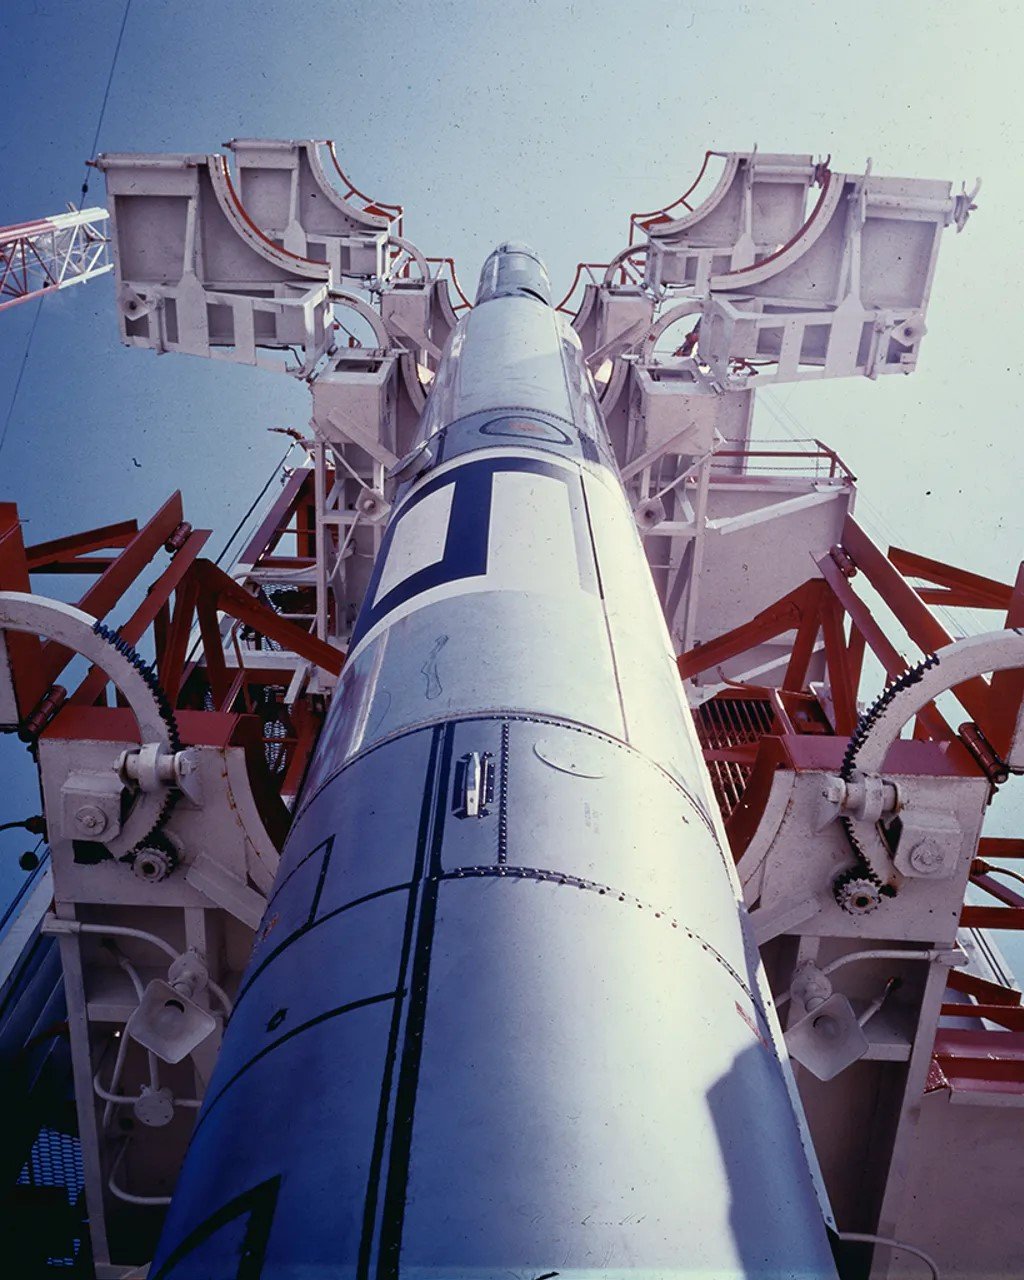 فشلت محاولة الولايات المتحدة إرسال قمر صناعي إلى الفضاء في عام 1957 عندما انفجر صاروخ فانغارد خلال عملية الإطلاق